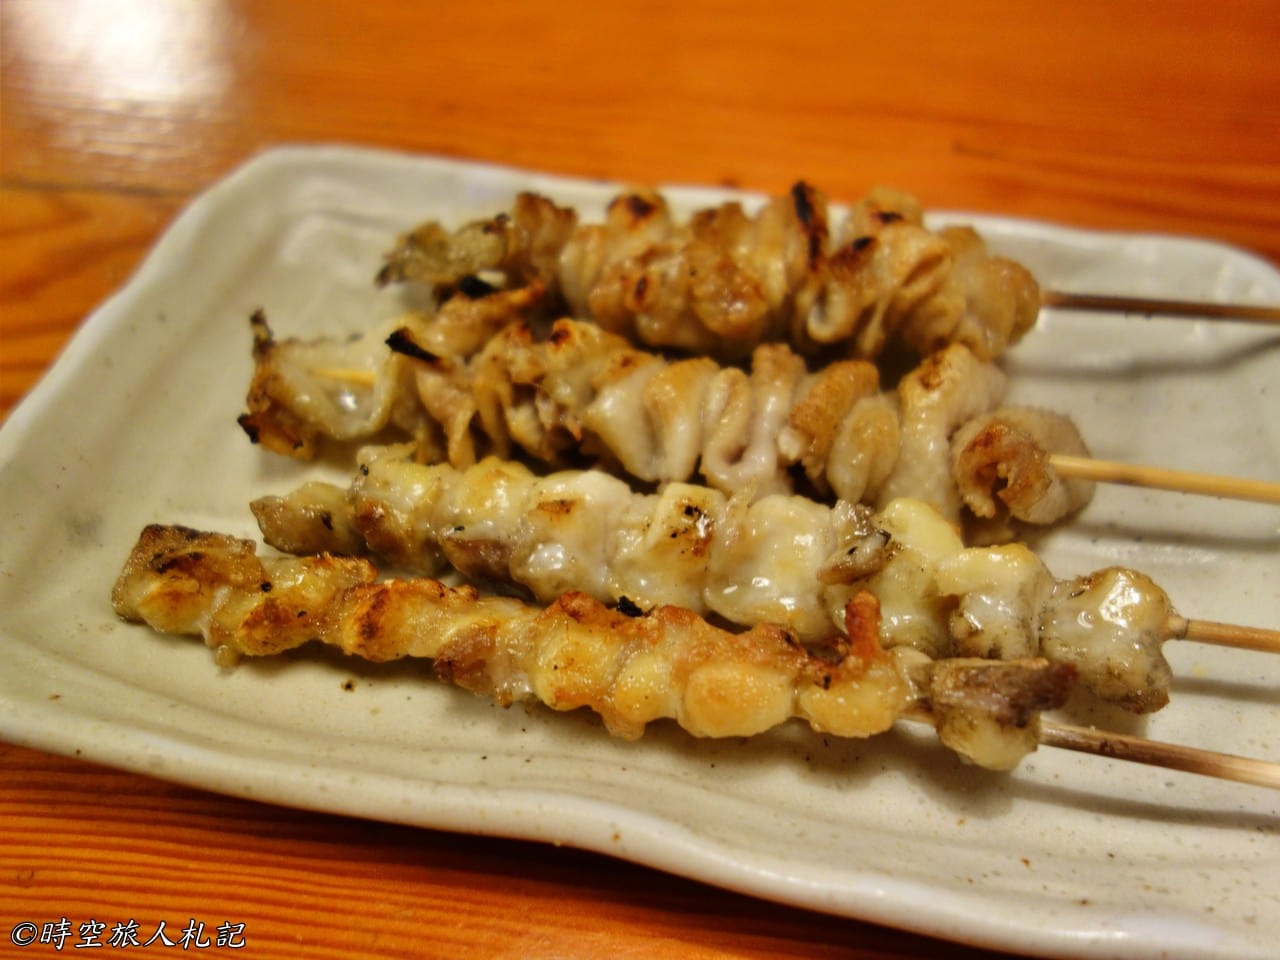 神戶美食,kobe-food,日本神戶美食 36